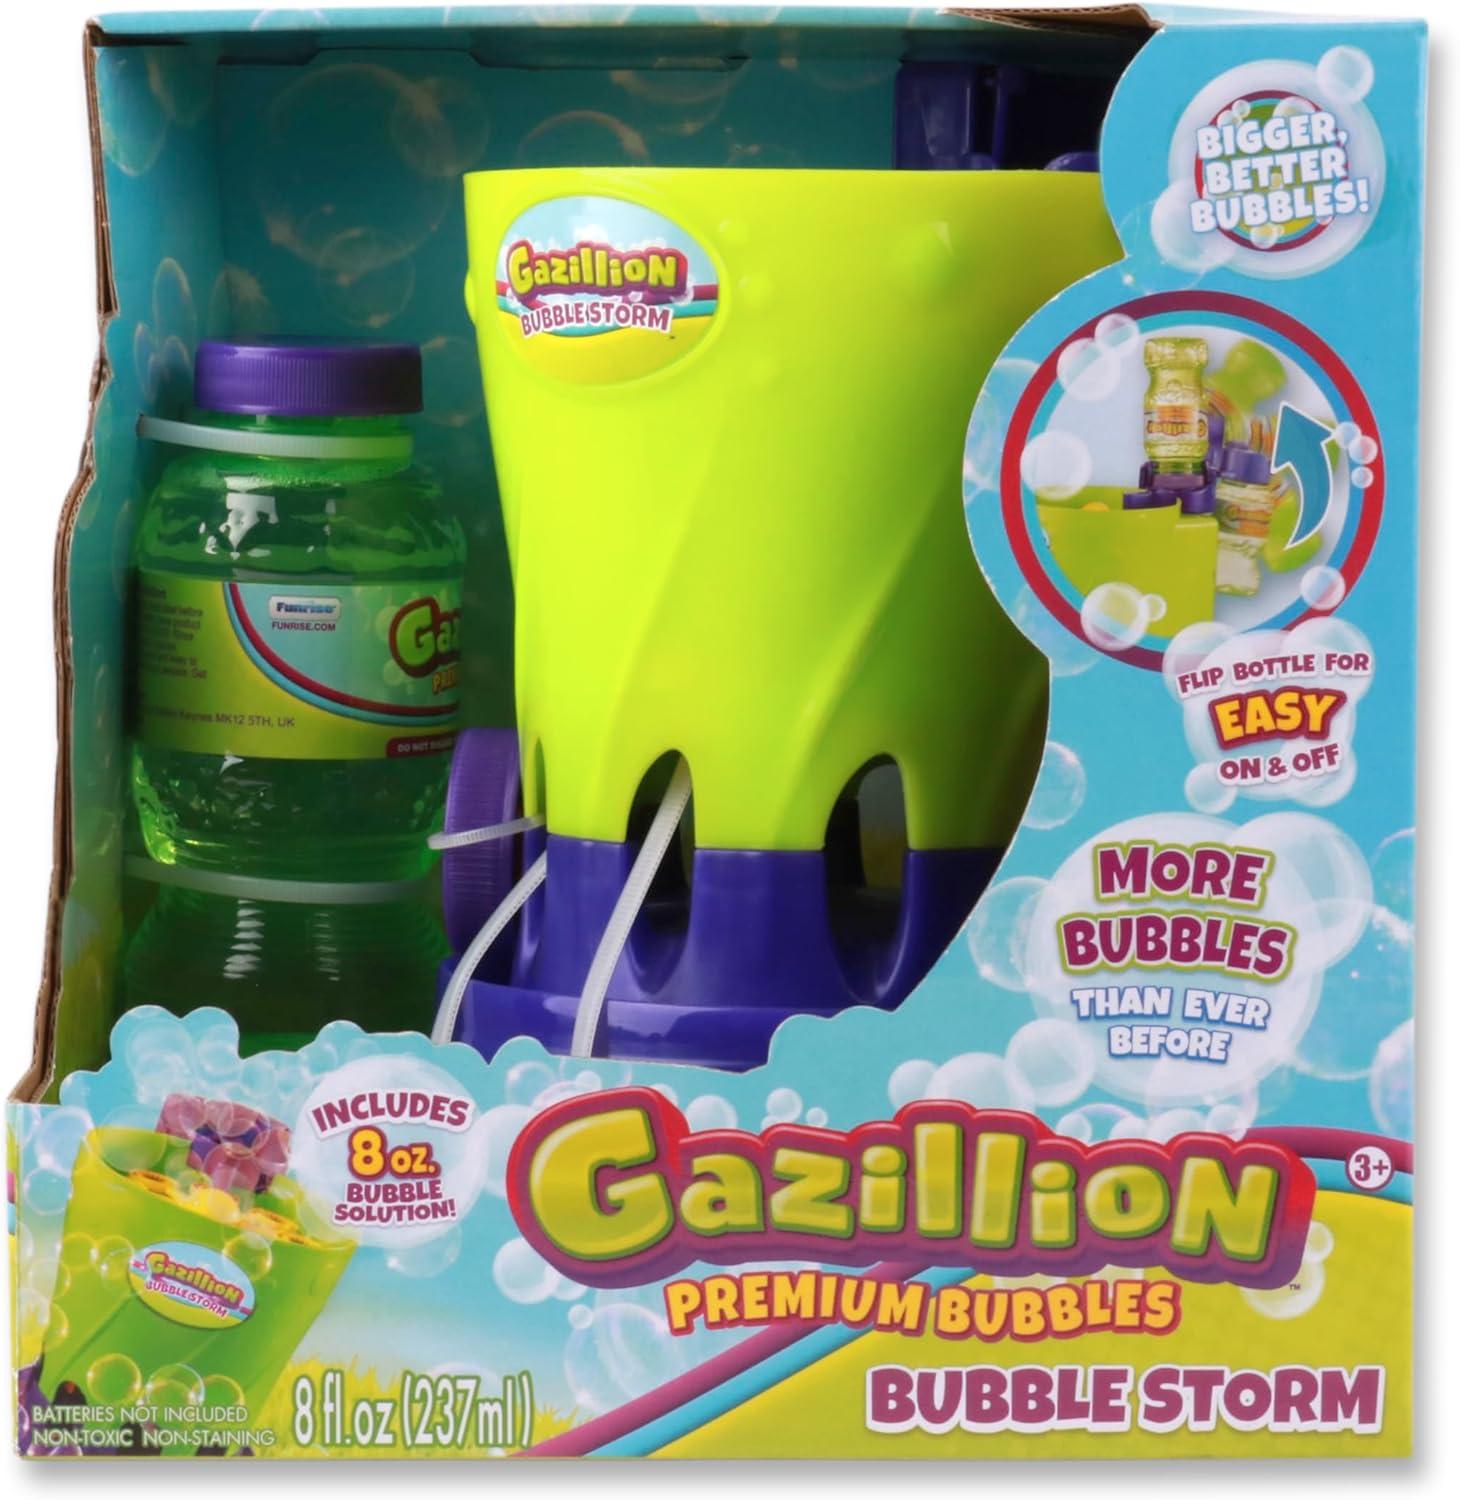 Compact Gazillion Bubble Storm Machine with Premium Solution